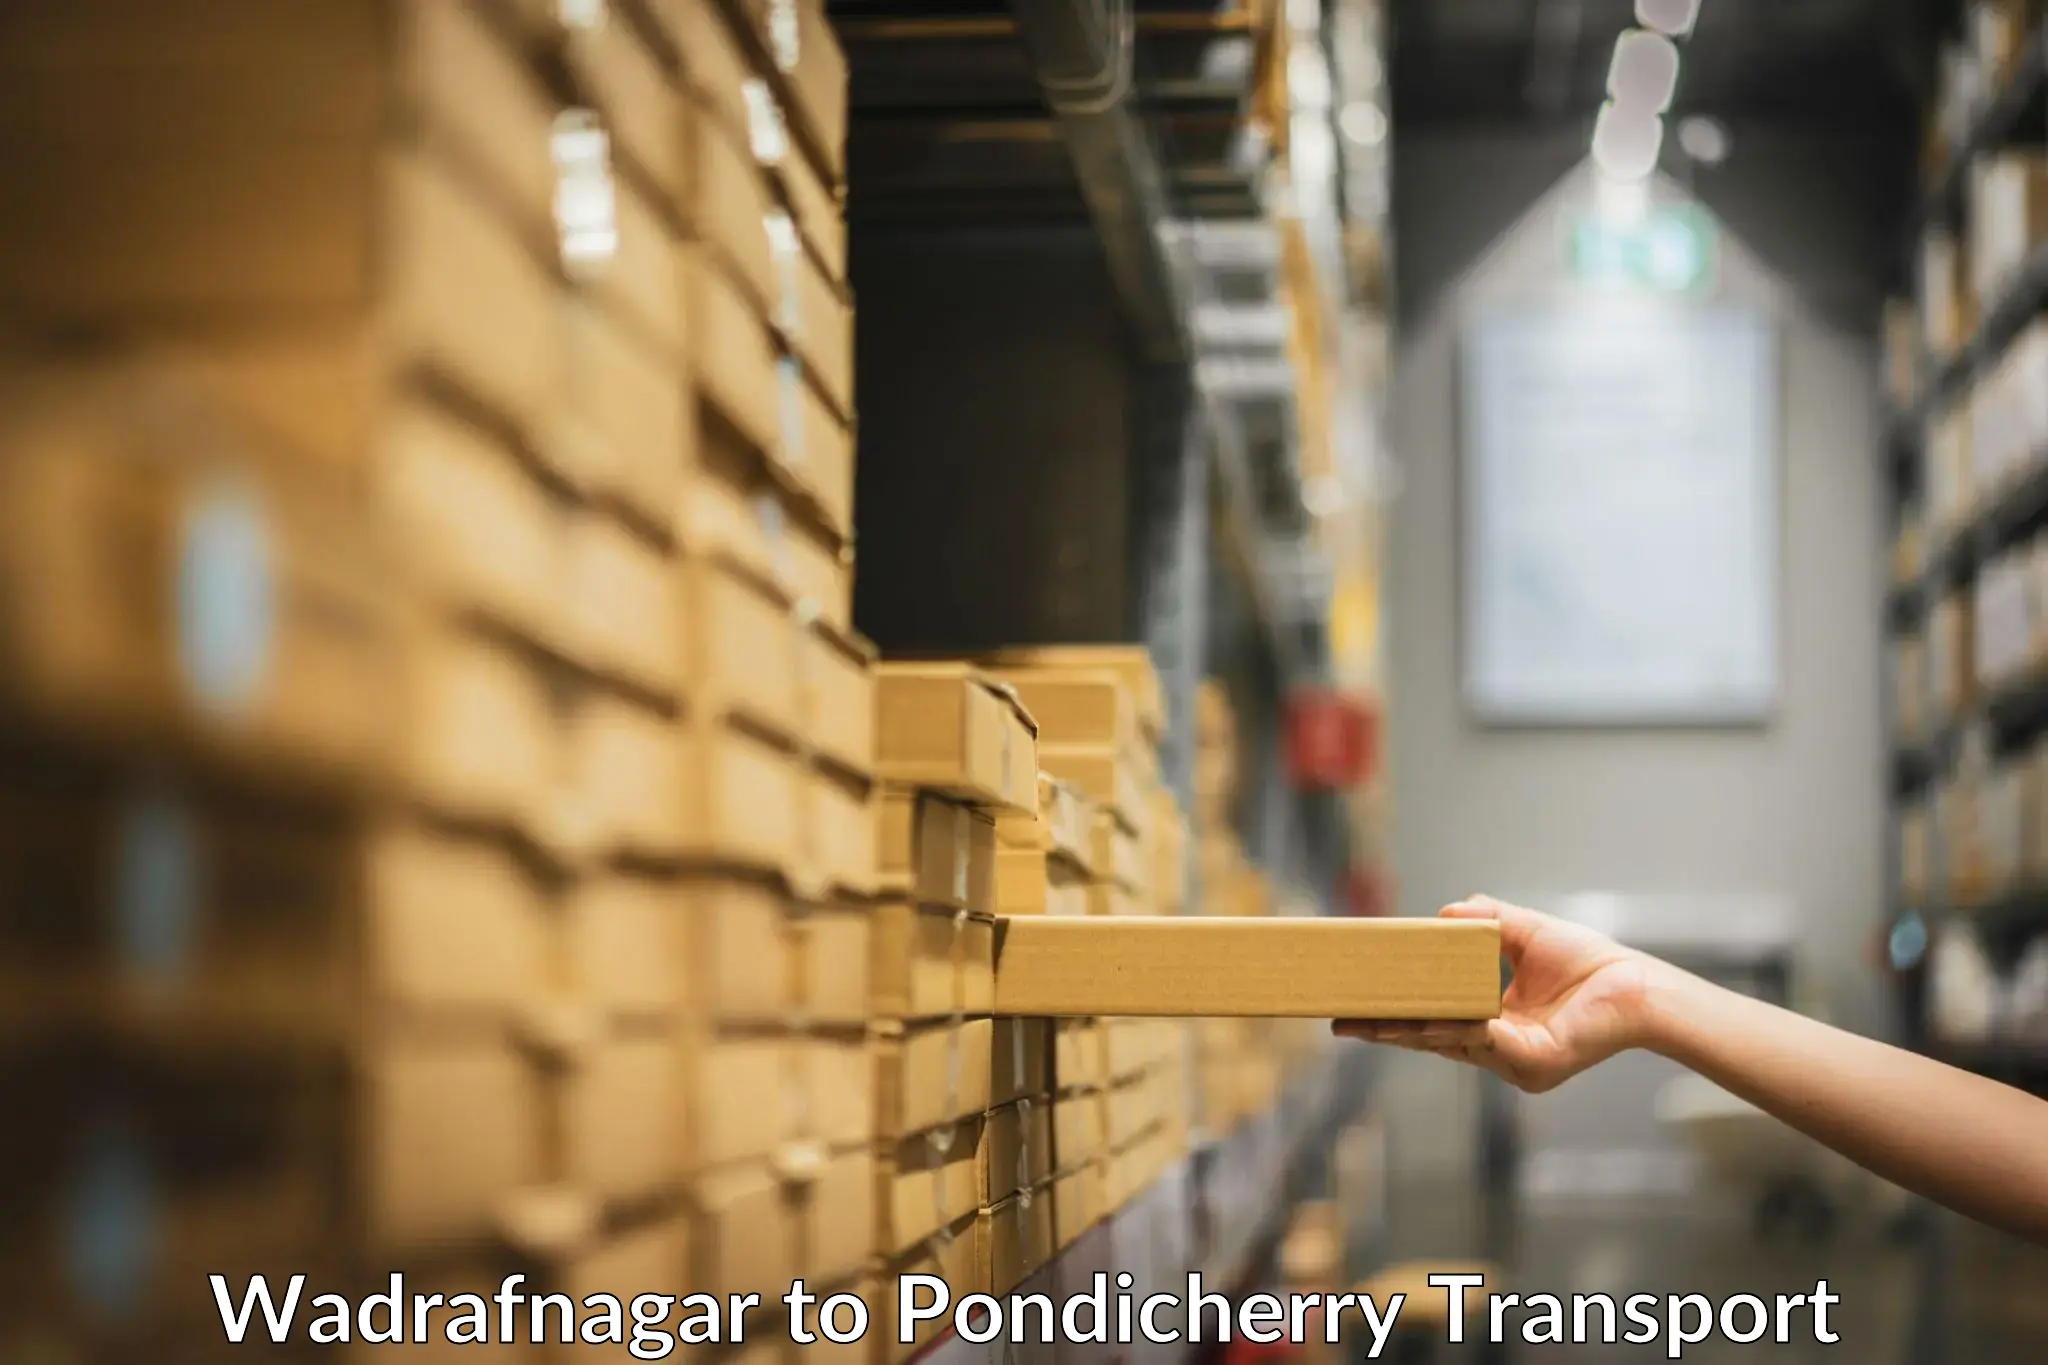 Part load transport service in India Wadrafnagar to Pondicherry